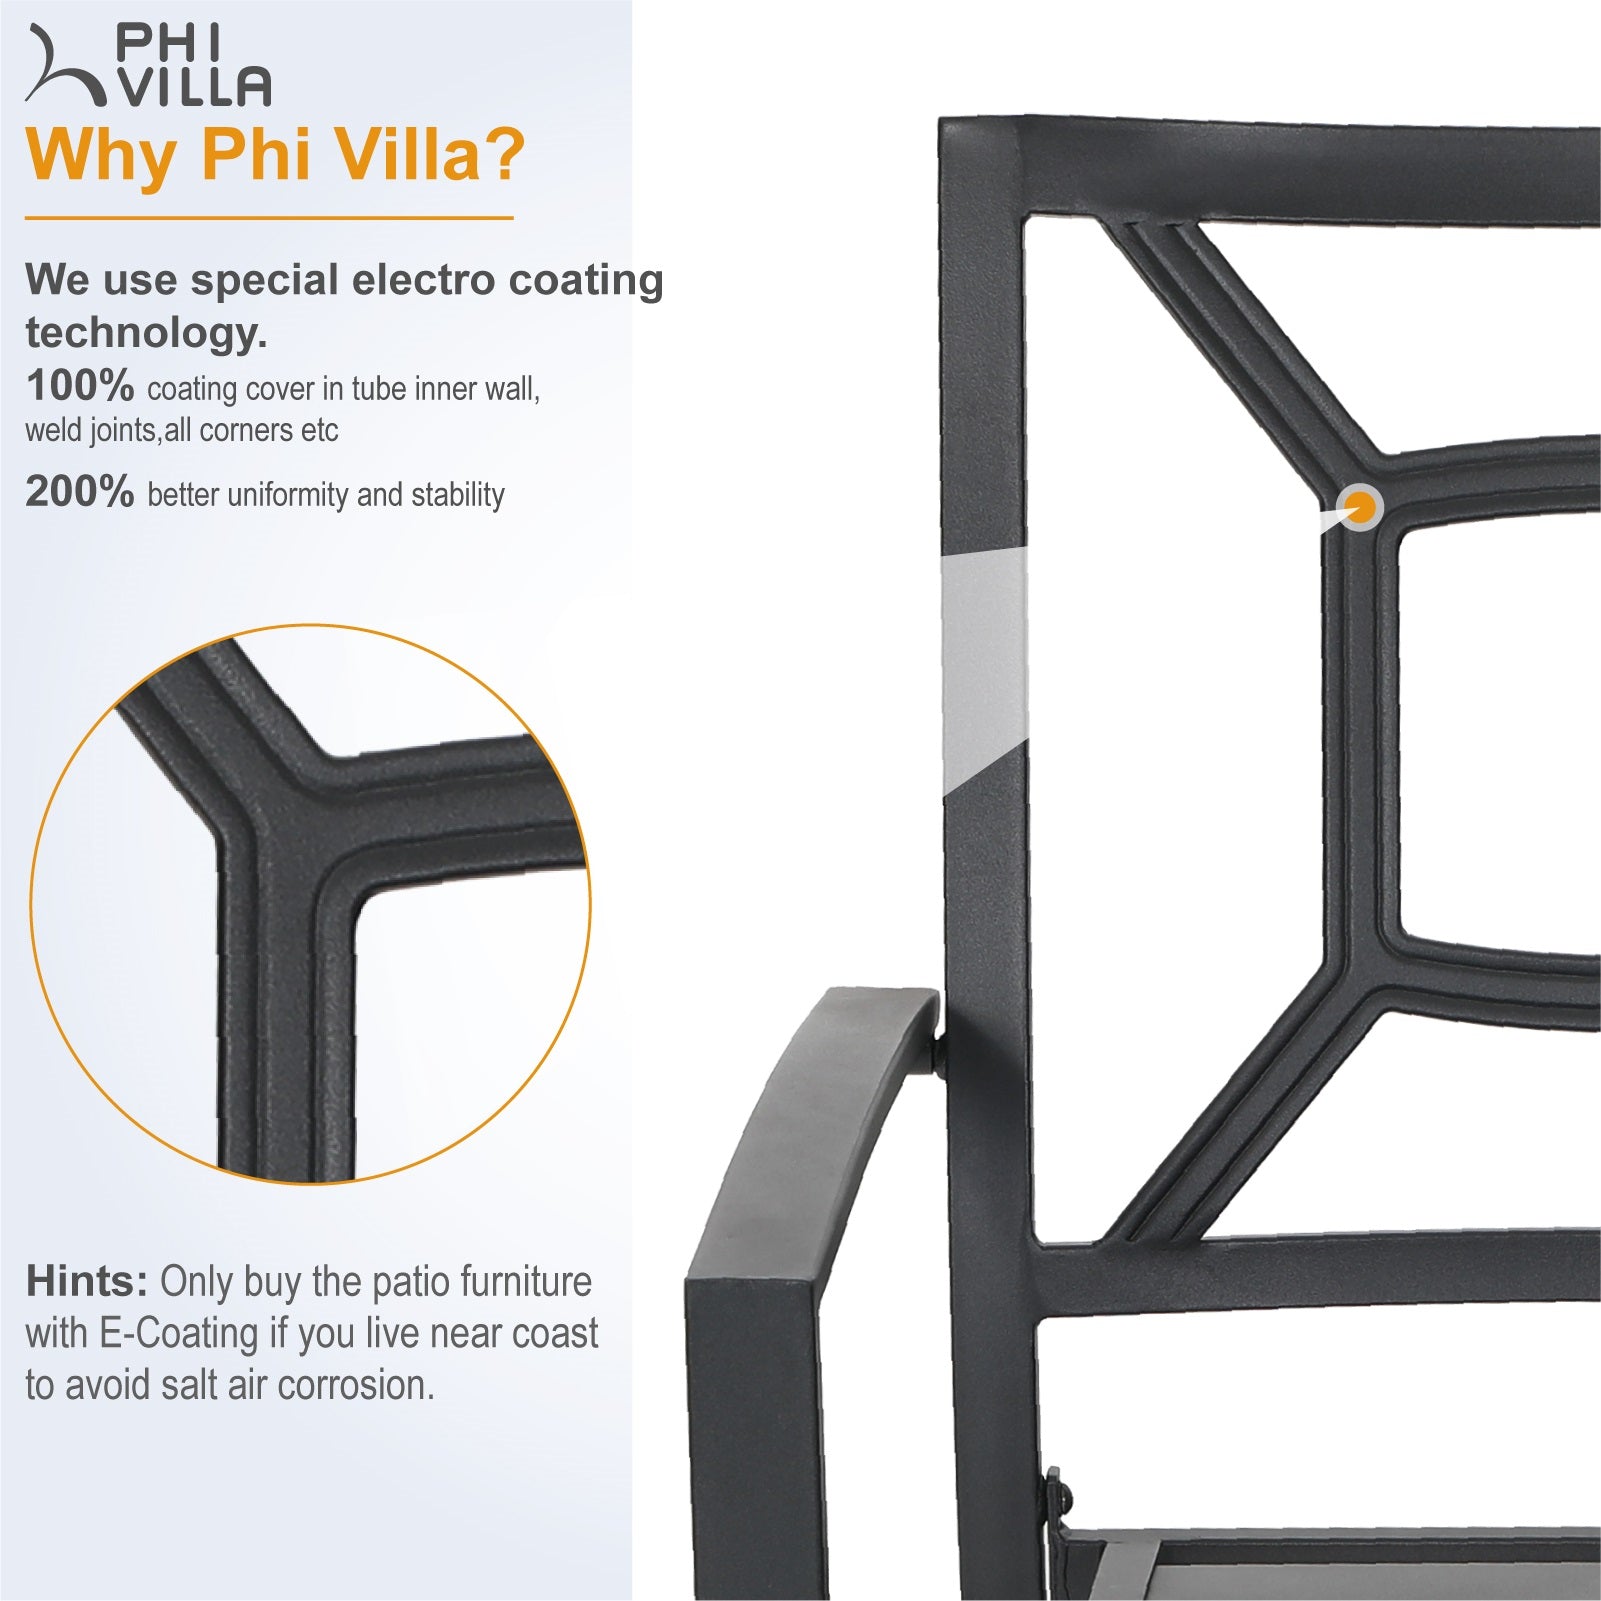 PHI VILLA 3-Piece Umbrella Base Table & 2 Stackable Chairs Patio Bistro Set